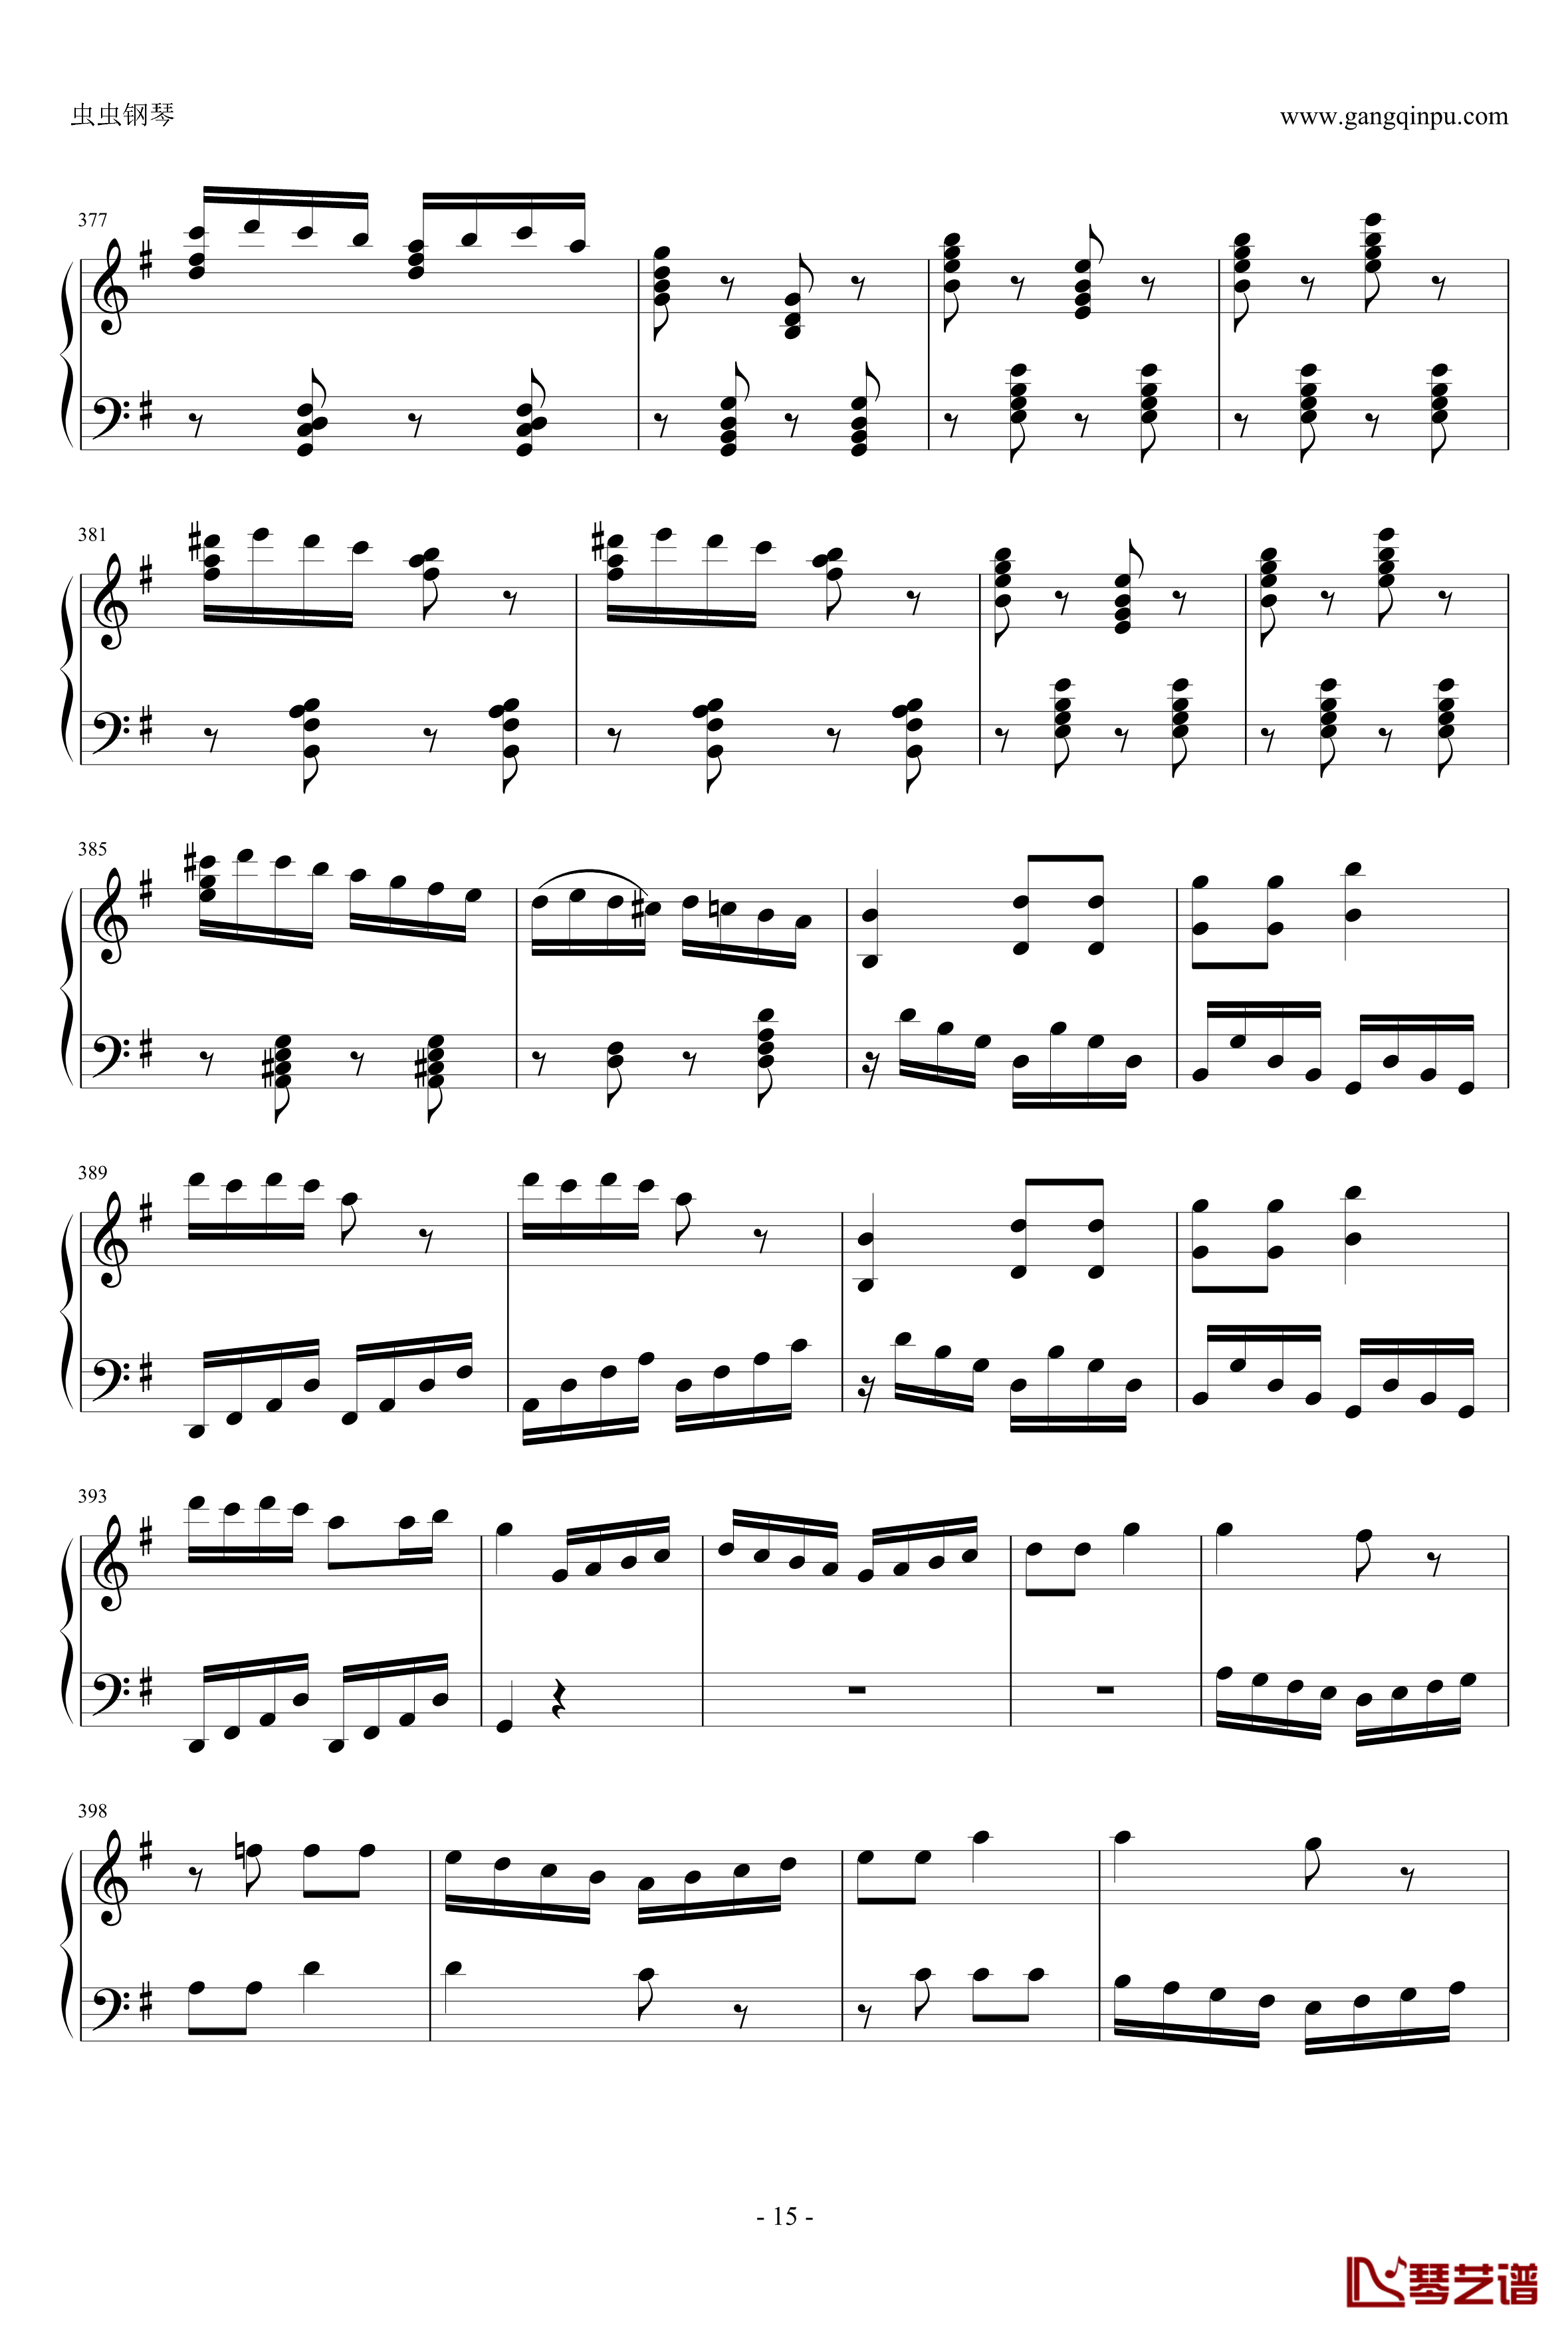 丢失一分钱的愤怒钢琴谱-贝多芬-beethoven15